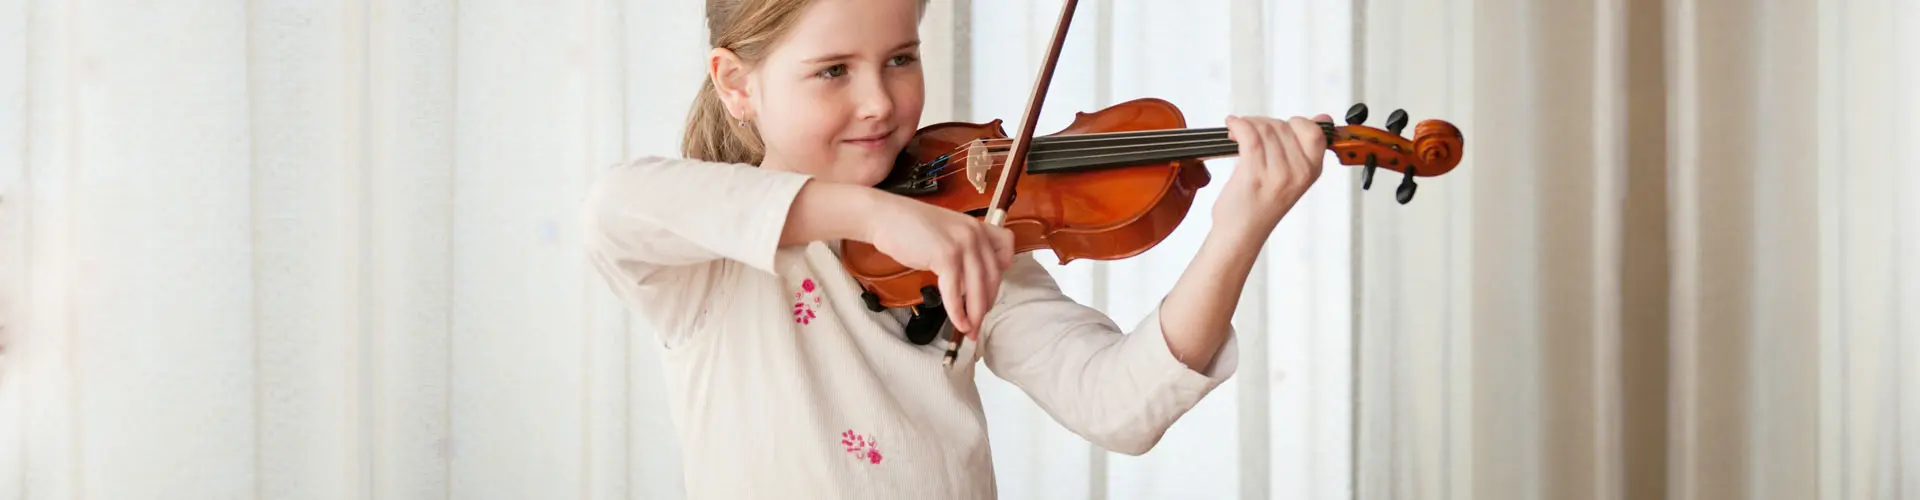 violin hache - Dónde se sienta el violín de primera silla